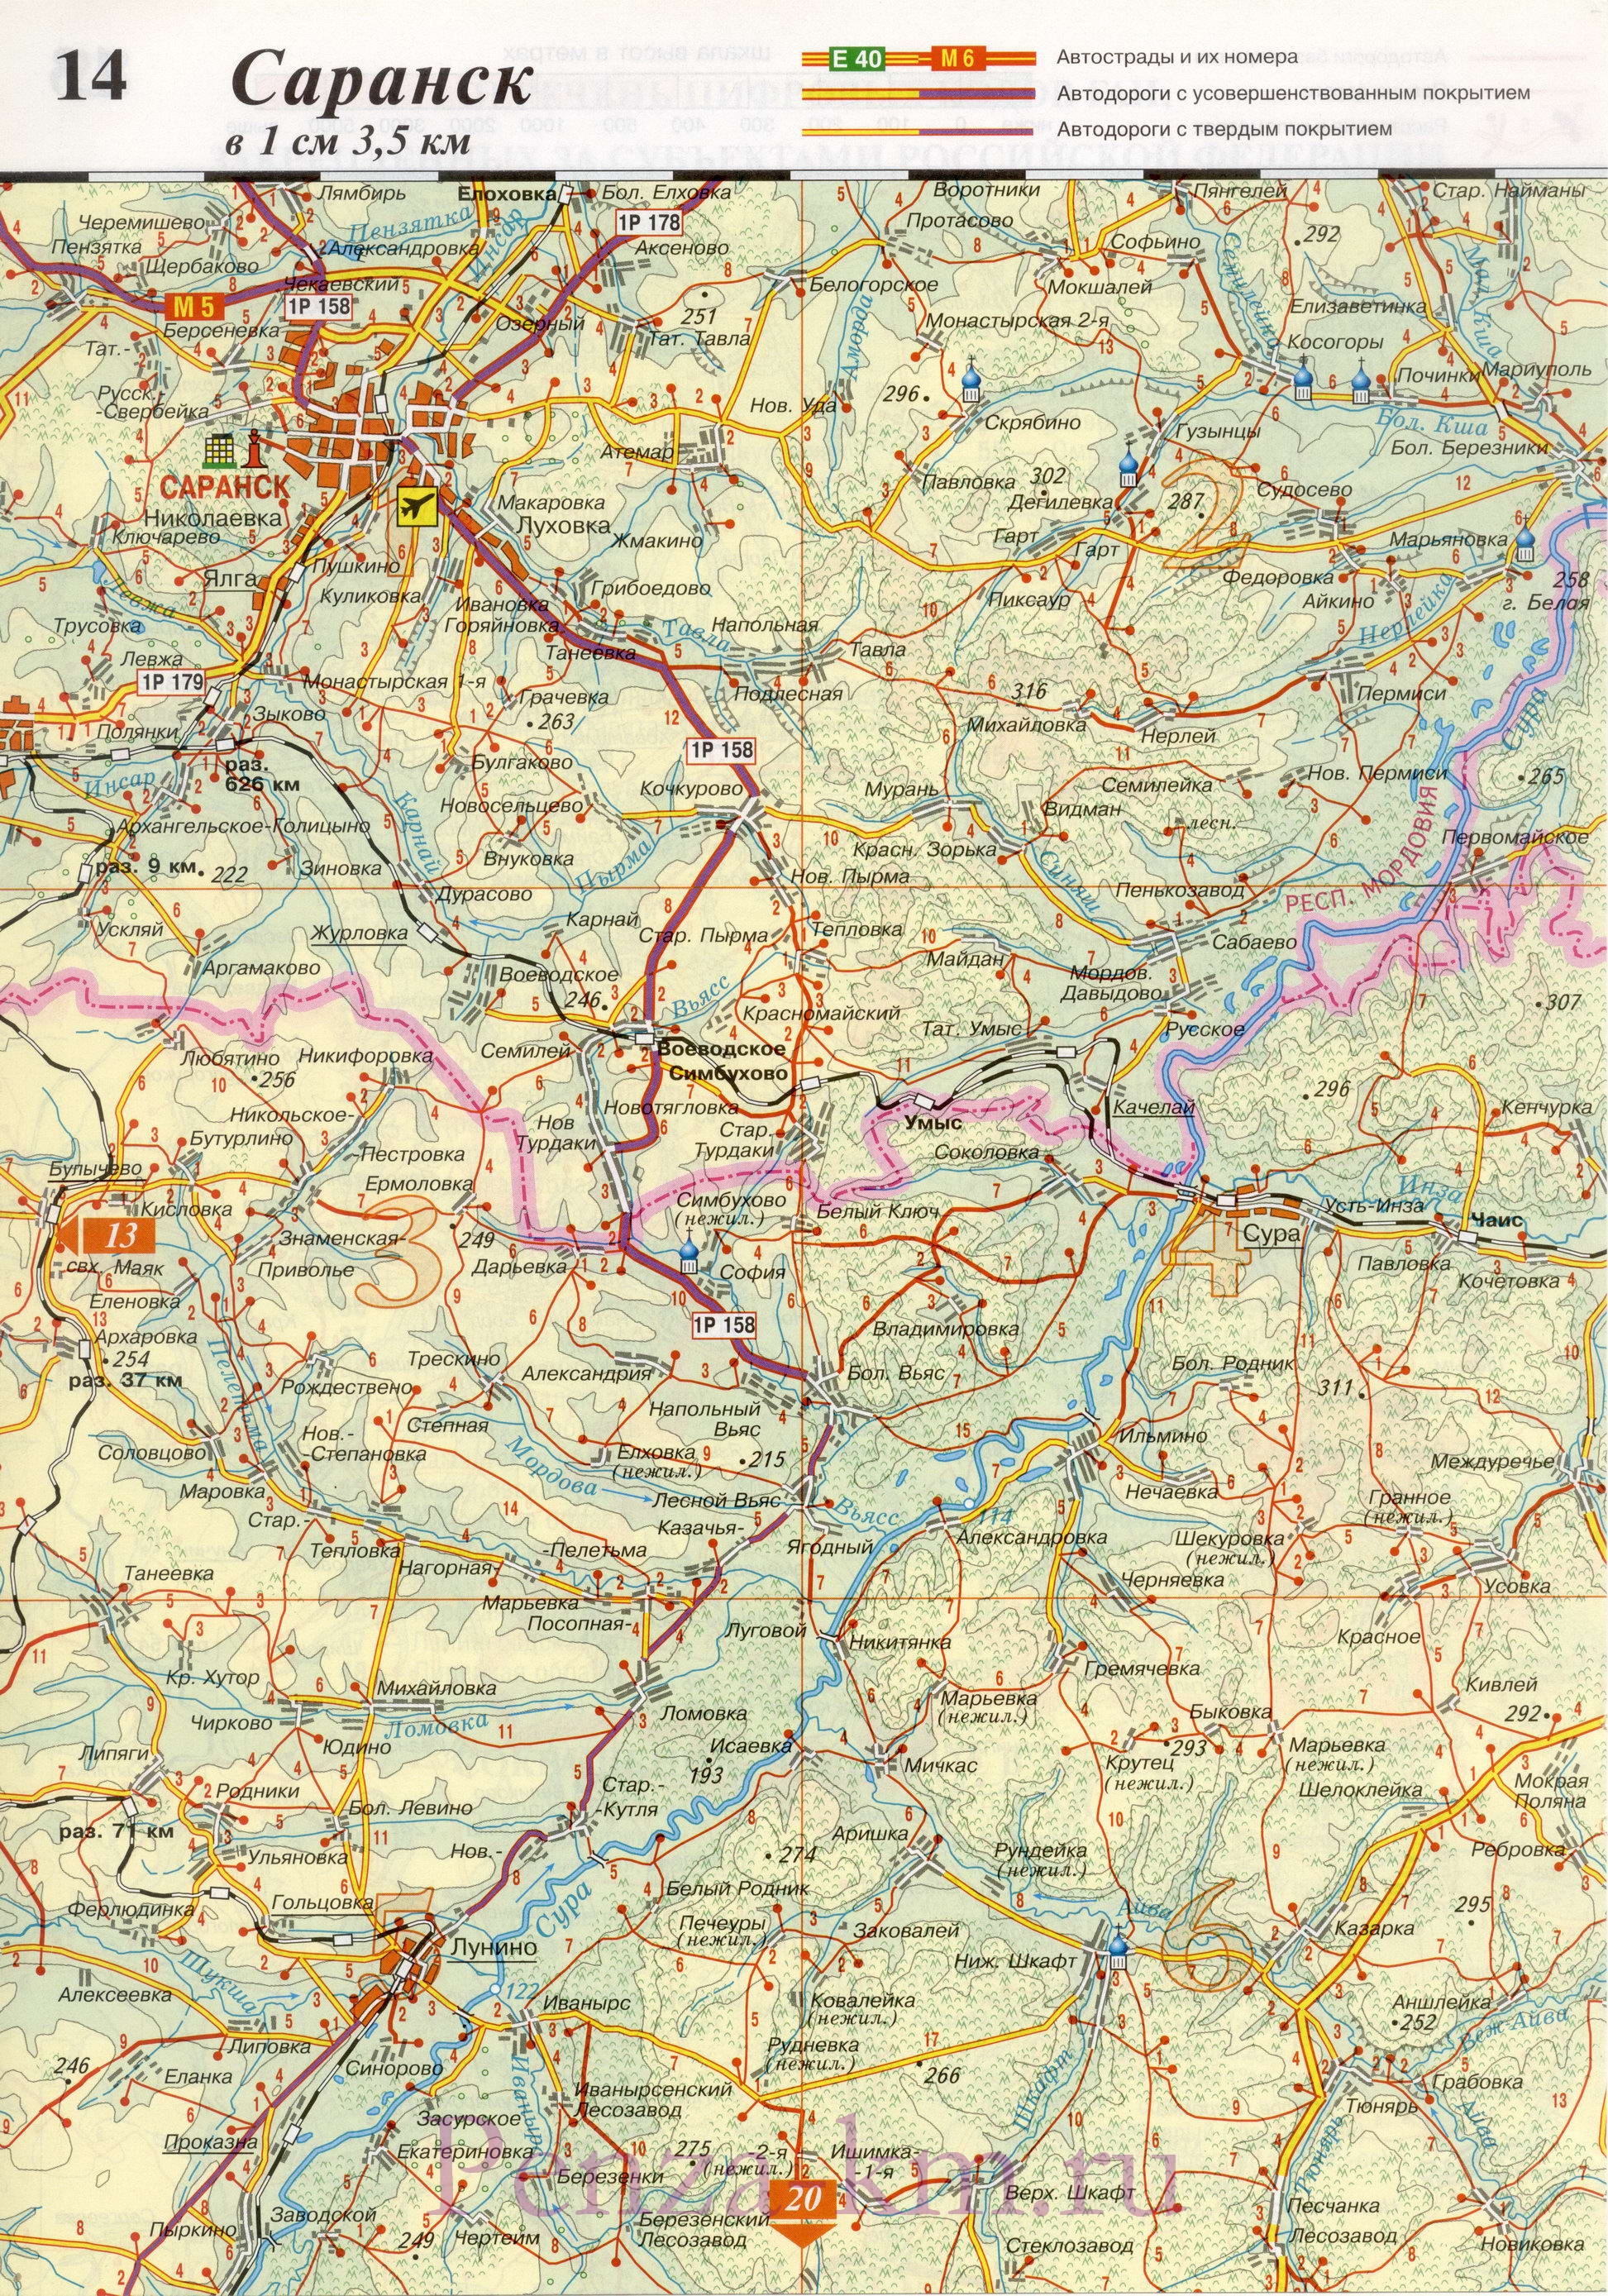  Пензенская область карта дорог. Подробная карта автодорог Пензенской области масштаба 1см:3,5км, D0 - 